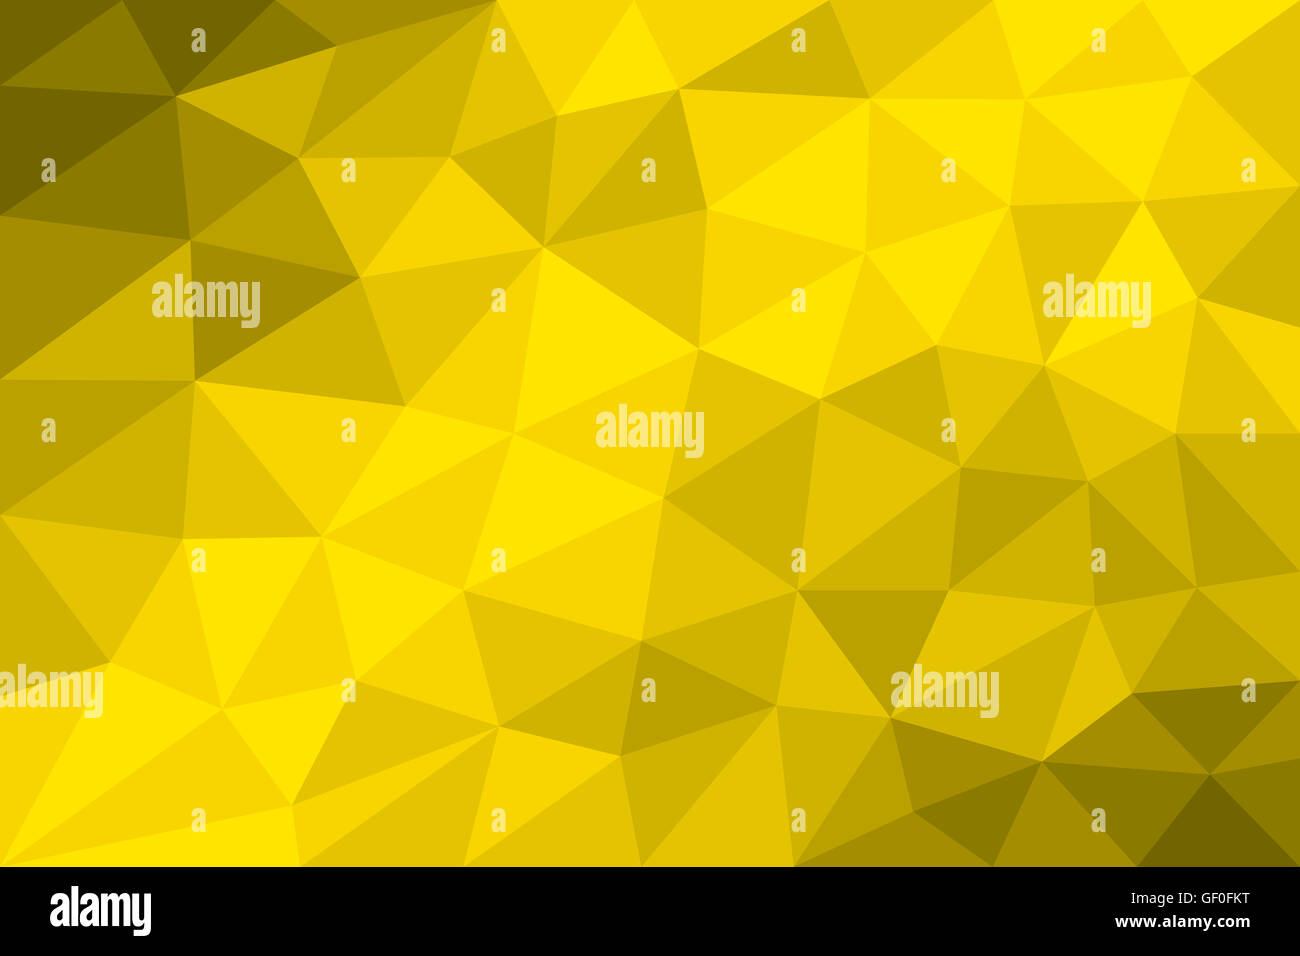 Poly faible jaune fond formé de triangles de différentes tailles. Variation du champs jaunes gradués. L'illustration. Banque D'Images